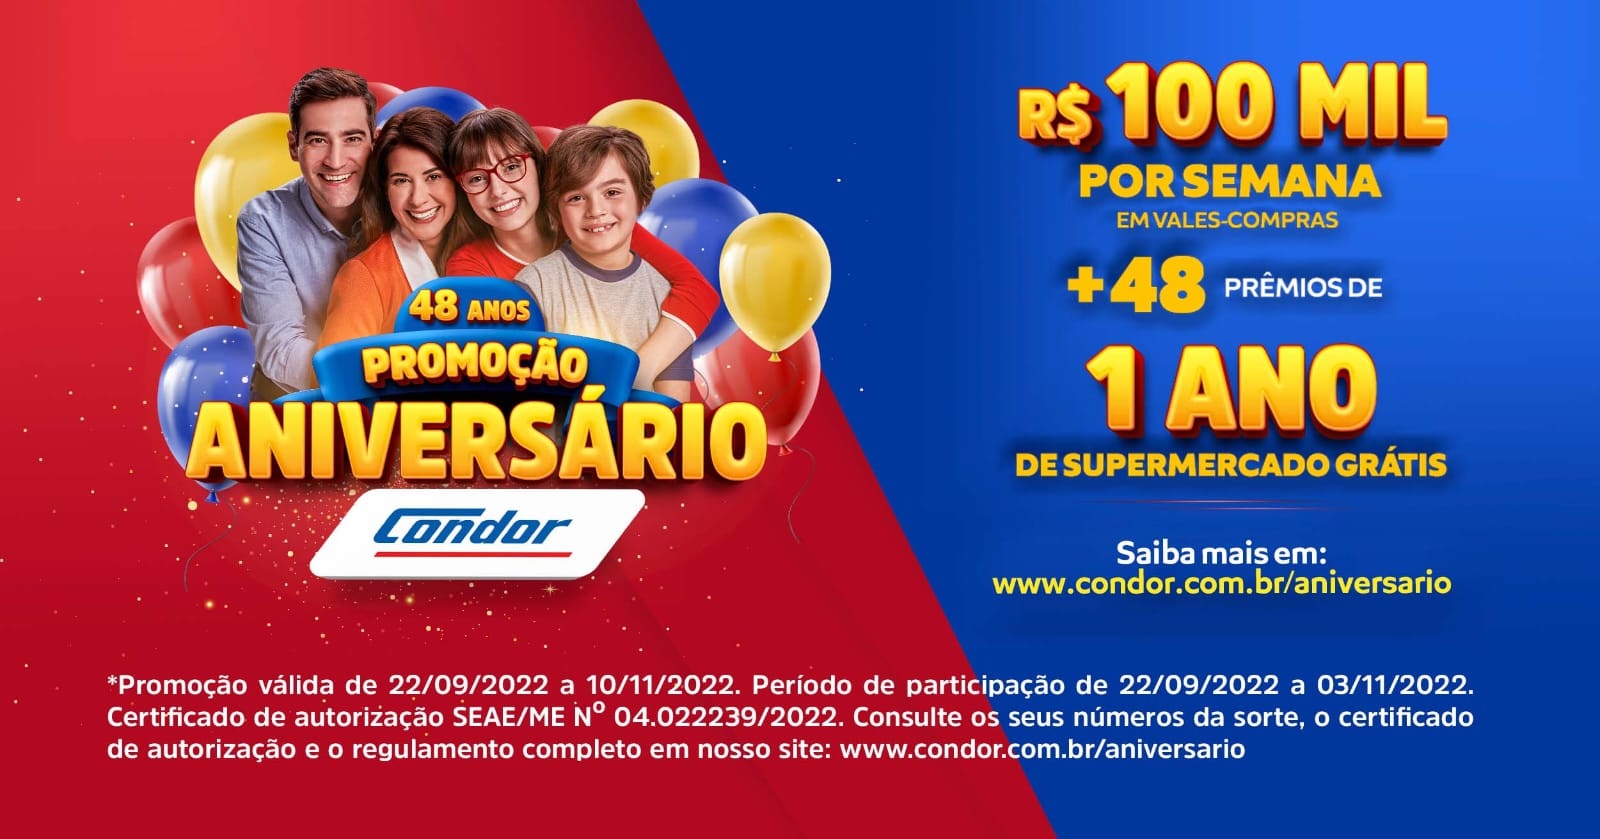 Aniversário Condor tem R$100 mil por semana mais 48 prêmios de 1 ano de supermercado grátis